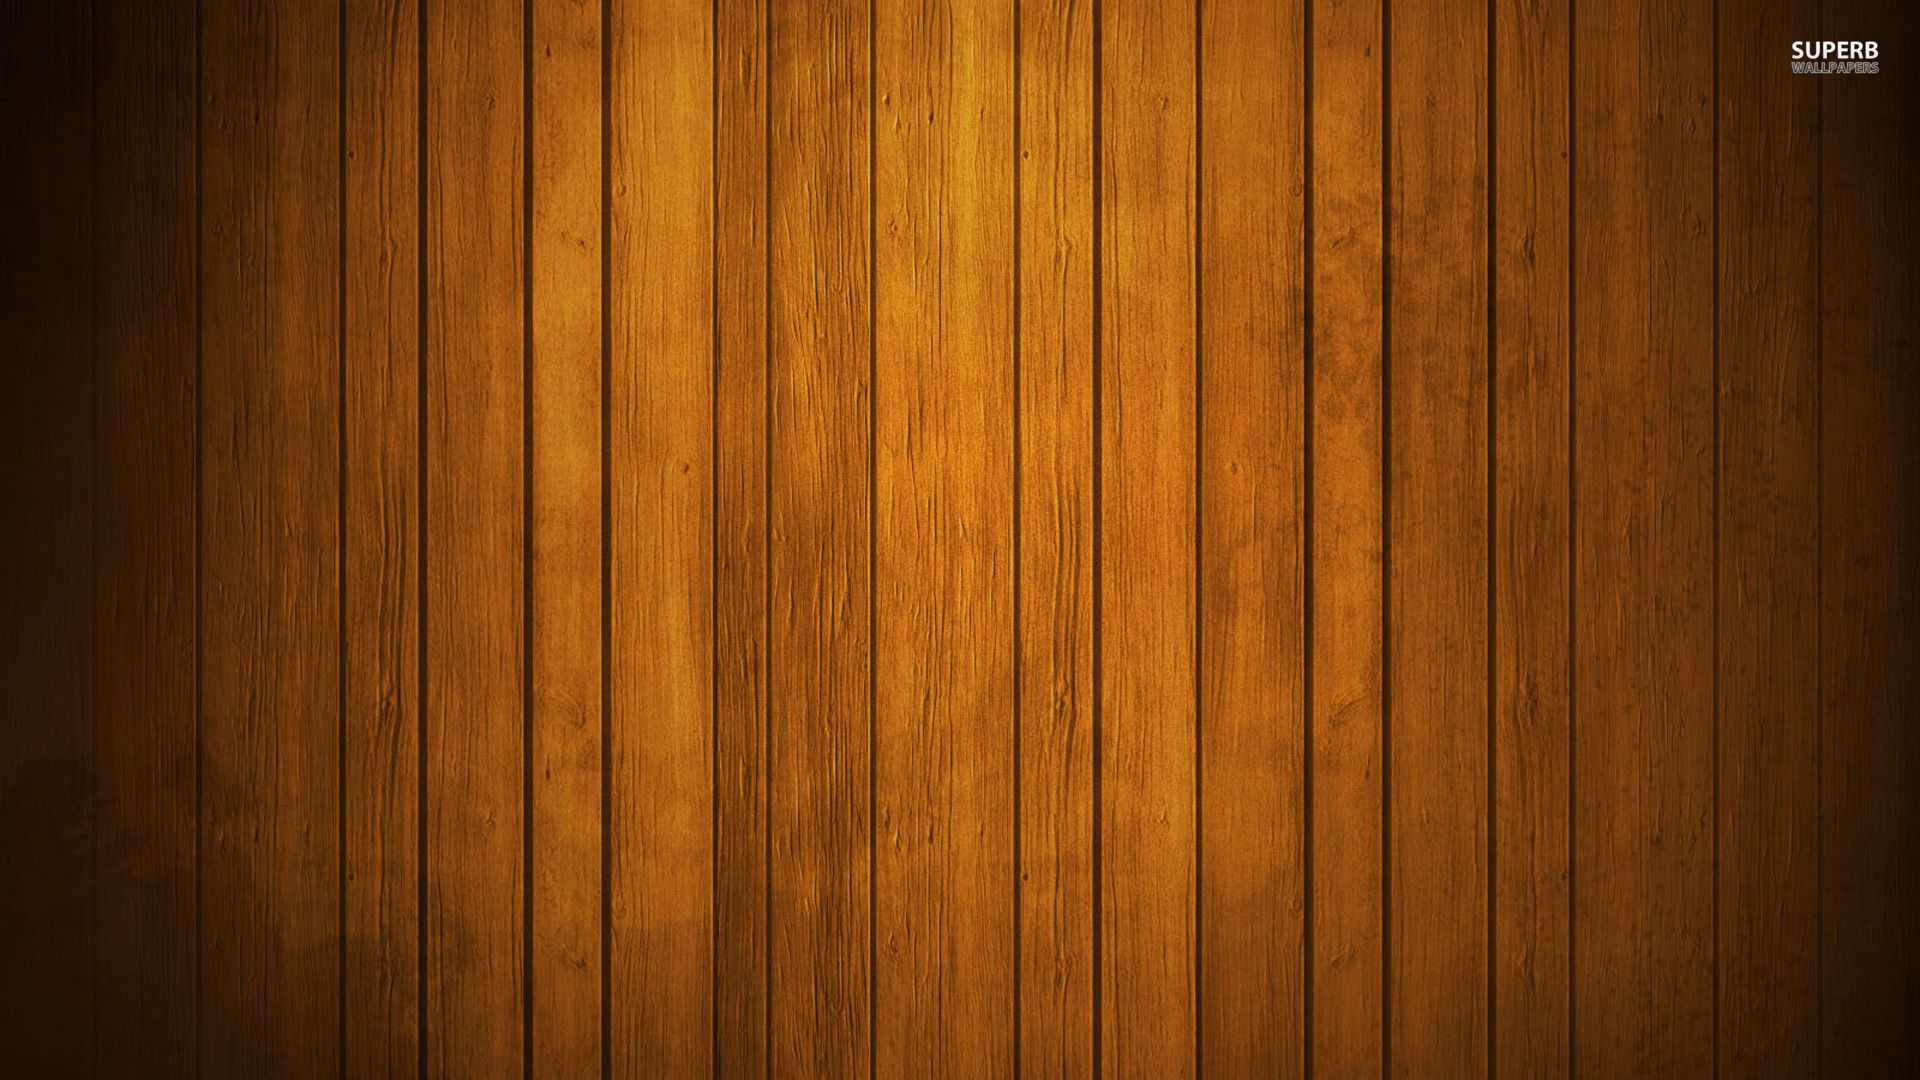 Hình nền gỗ cao cấp HD sẽ khiến cho bất kỳ chiếc máy tính nào trở nên sang trọng hơn bao giờ hết. Với chất lượng hình ảnh sắc nét và độ phân giải cao, các chi tiết của bức tranh gỗ sẽ được tái tạo chân thực hơn bao giờ hết.